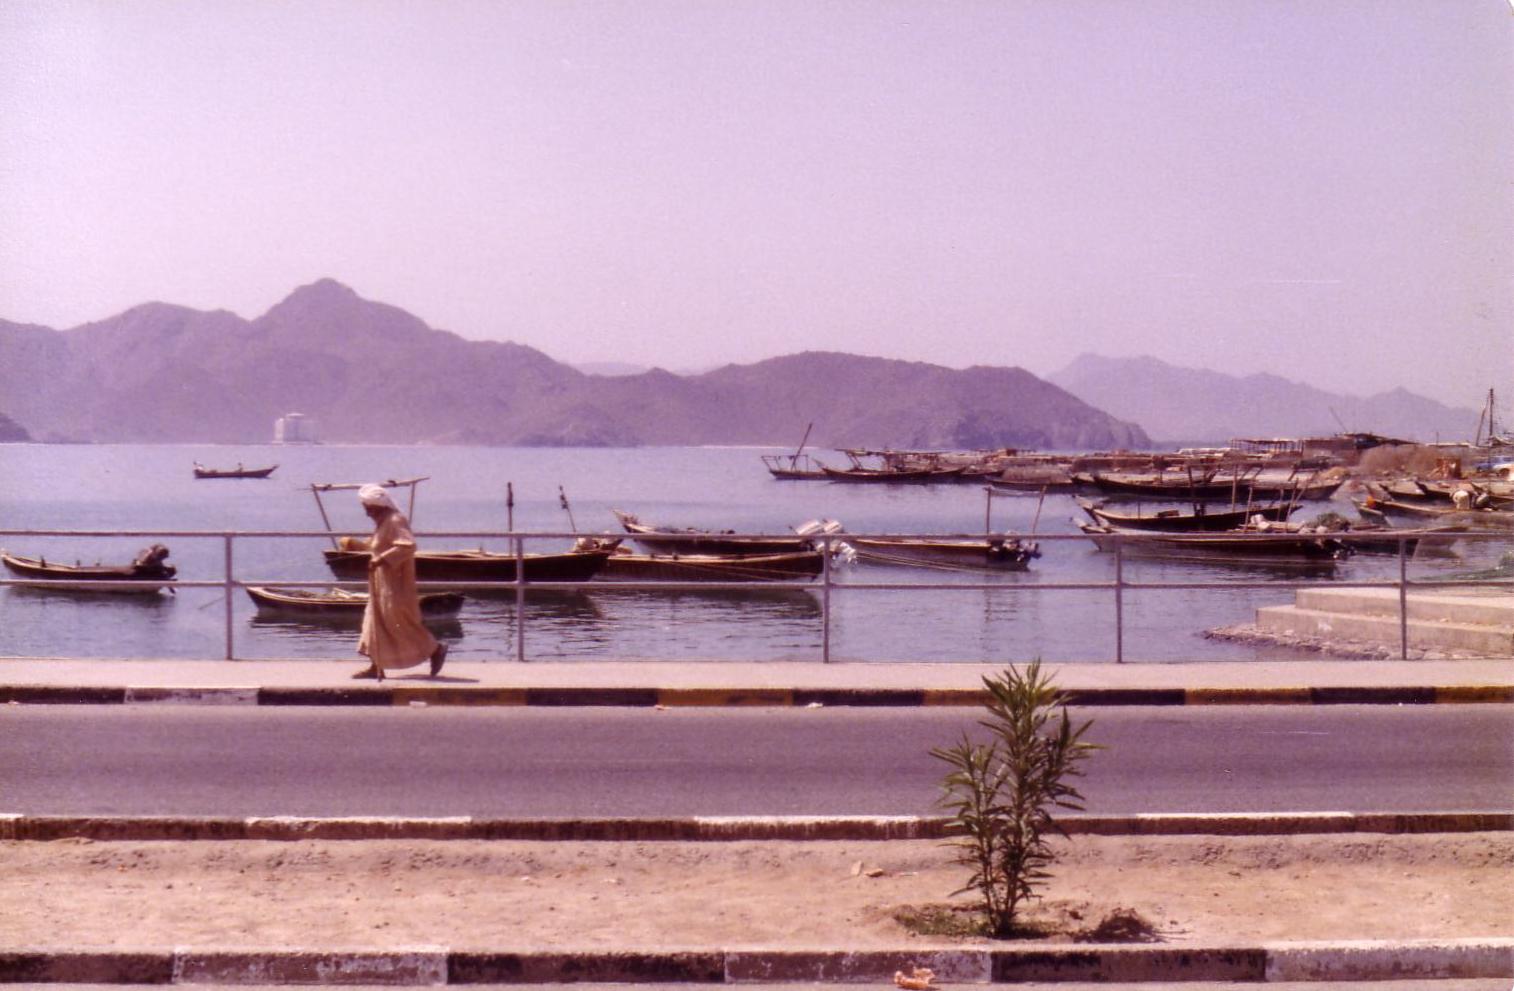 Khor Fakkan harbour